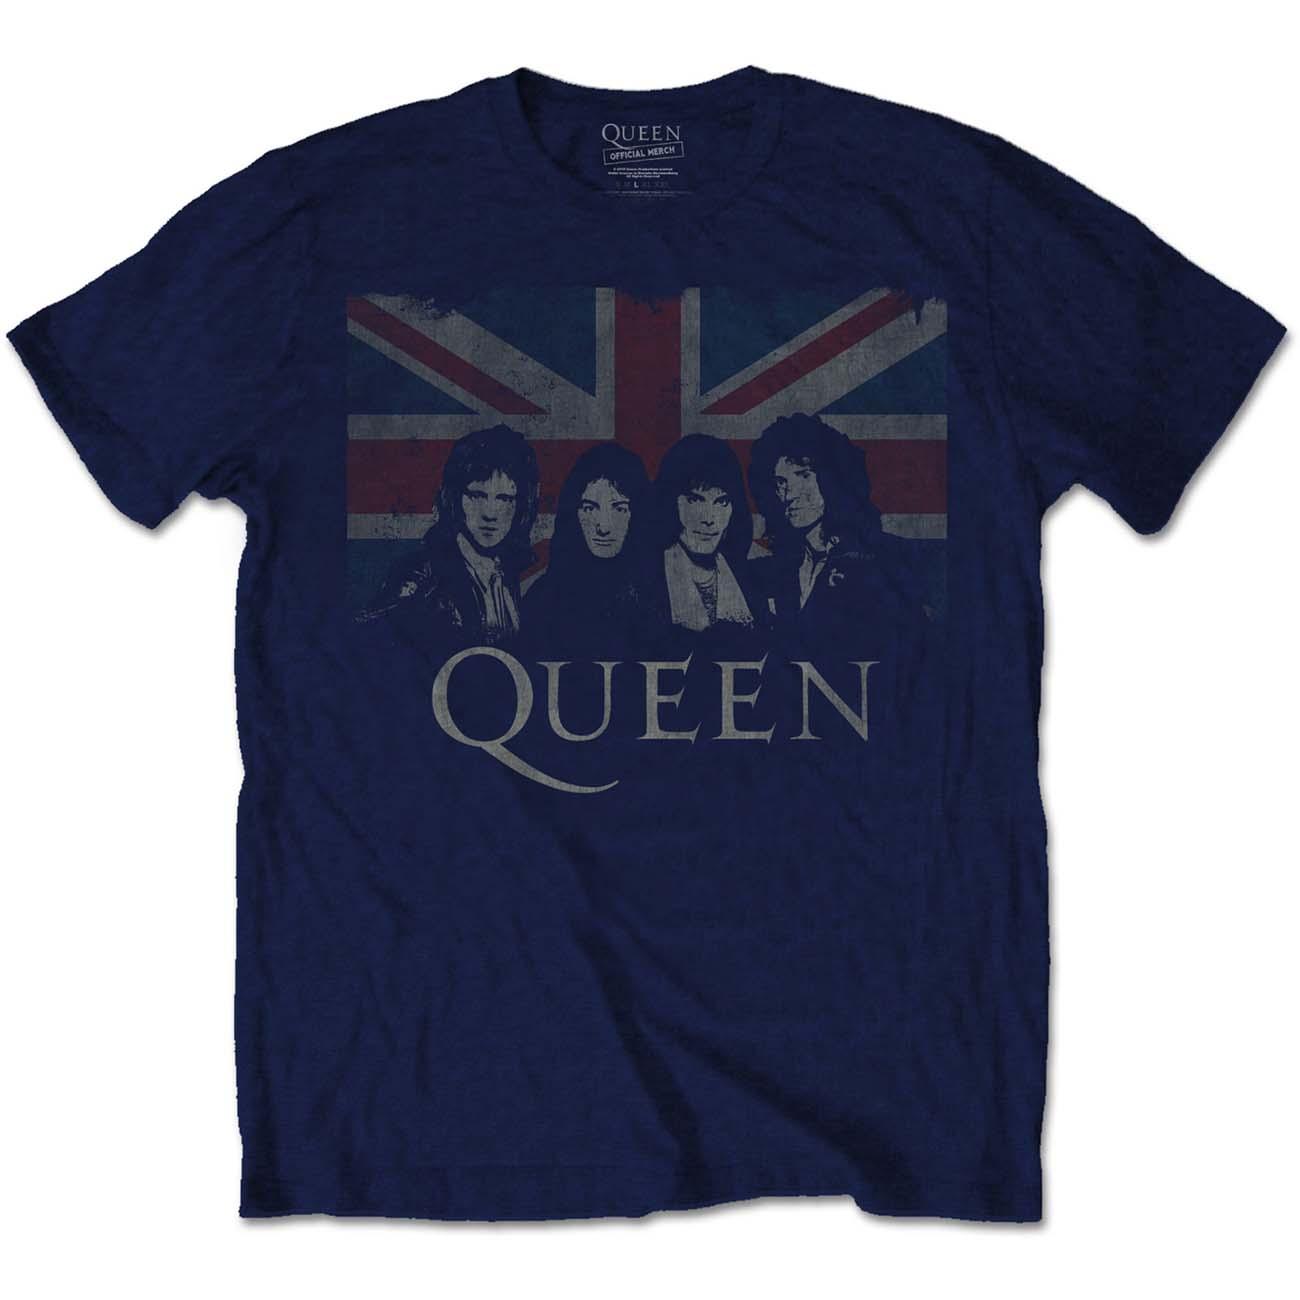 (クイーン) Queen オフィシャル商品 ユニセックス Union Tシャツ 半袖 トップス 【海外通販】 2